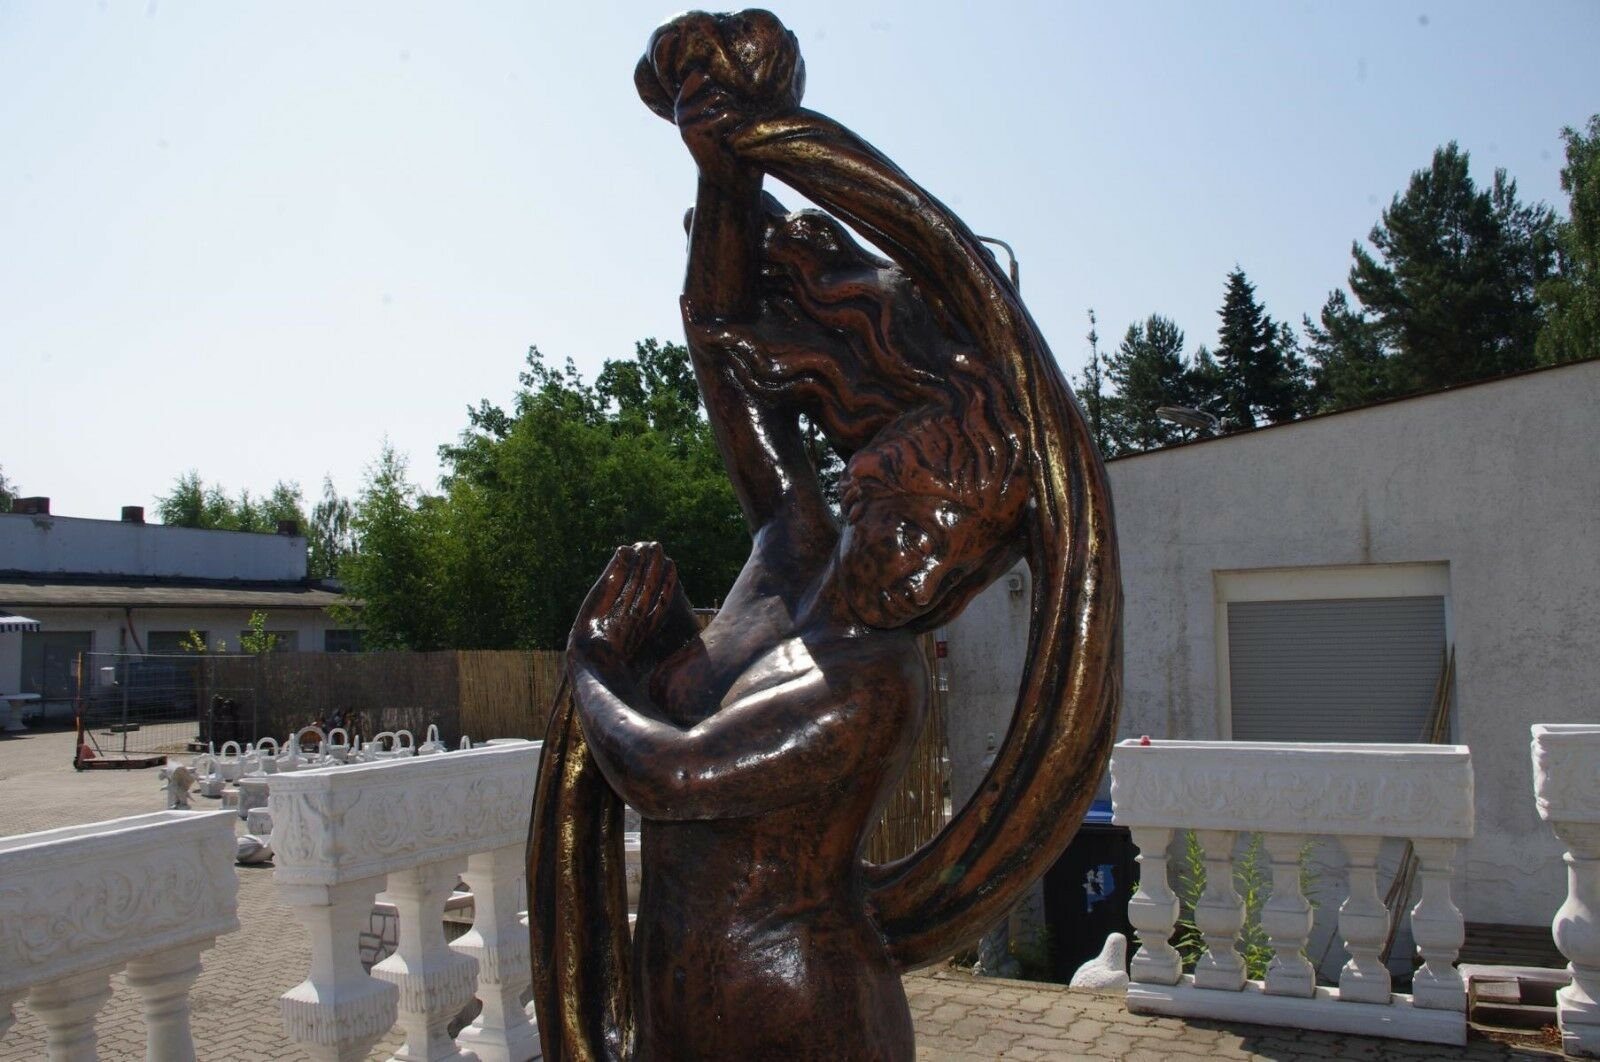 Antikes Wohndesign Gartenfigur Griechische Steinfigur Göttin Frauenfigur Nackte Teichfigu Gartenfigur